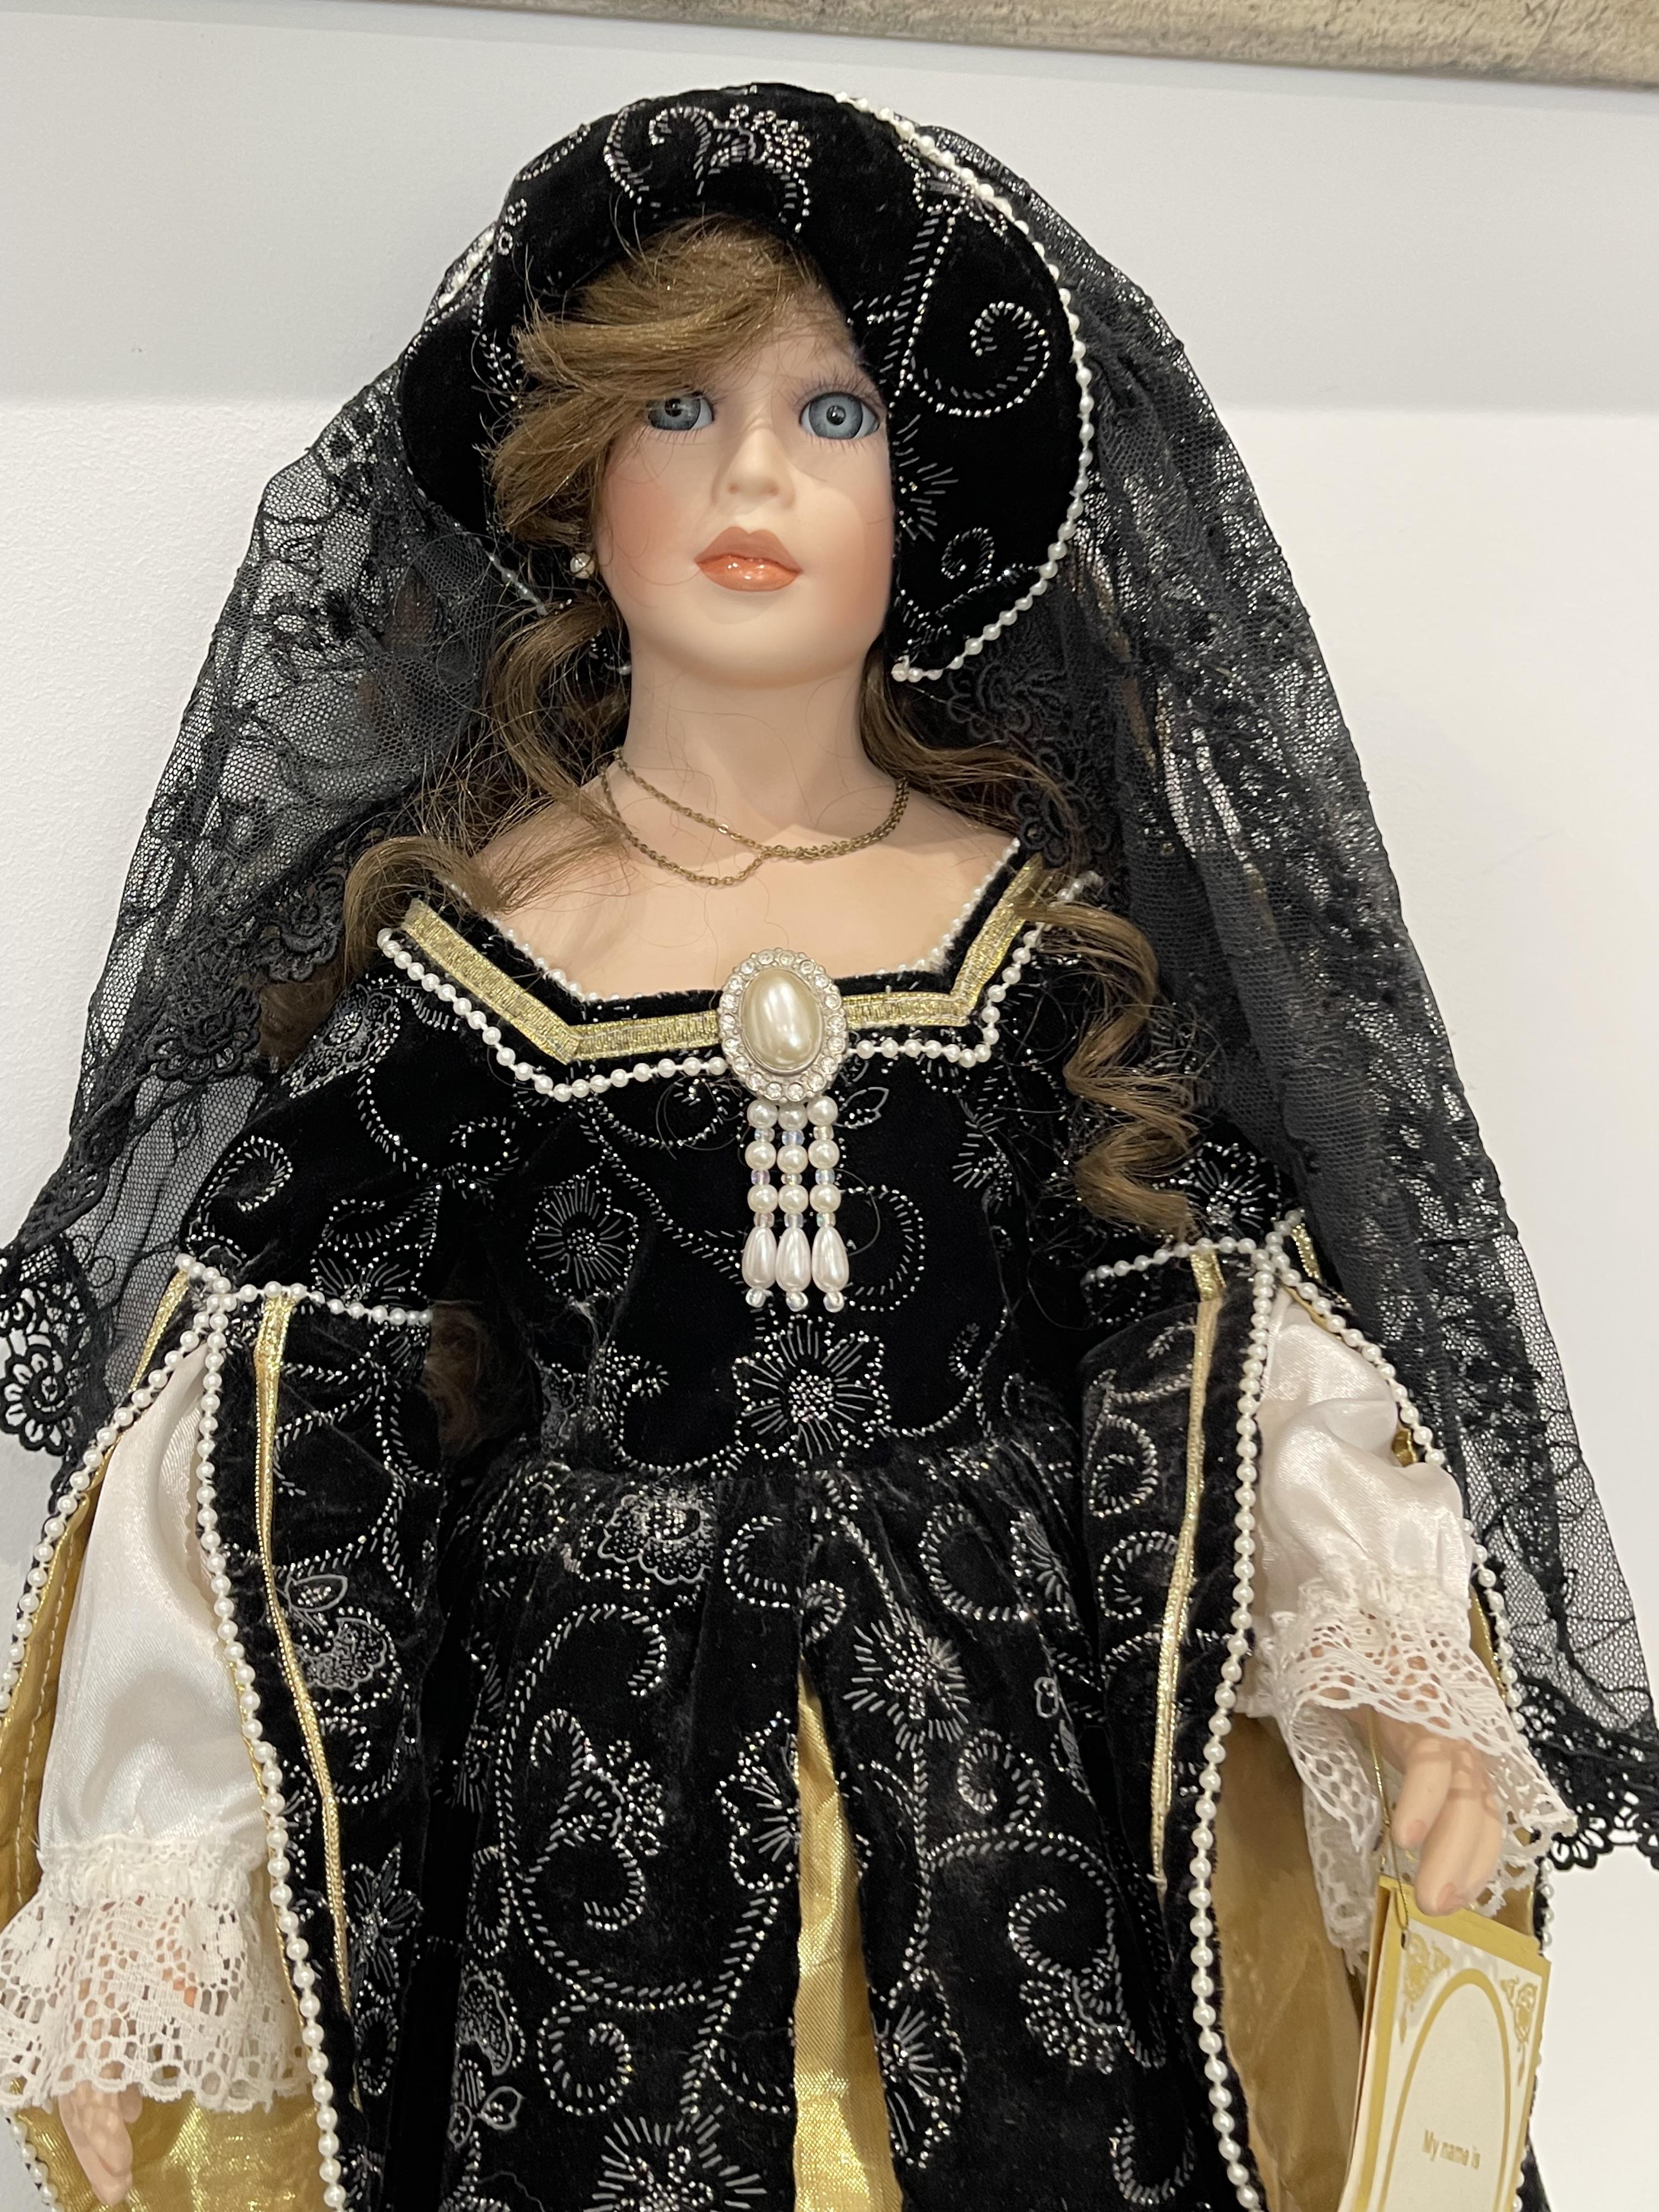 Alberton Limited Edition Anne Boleyn Porcelain Dol - Image 3 of 21